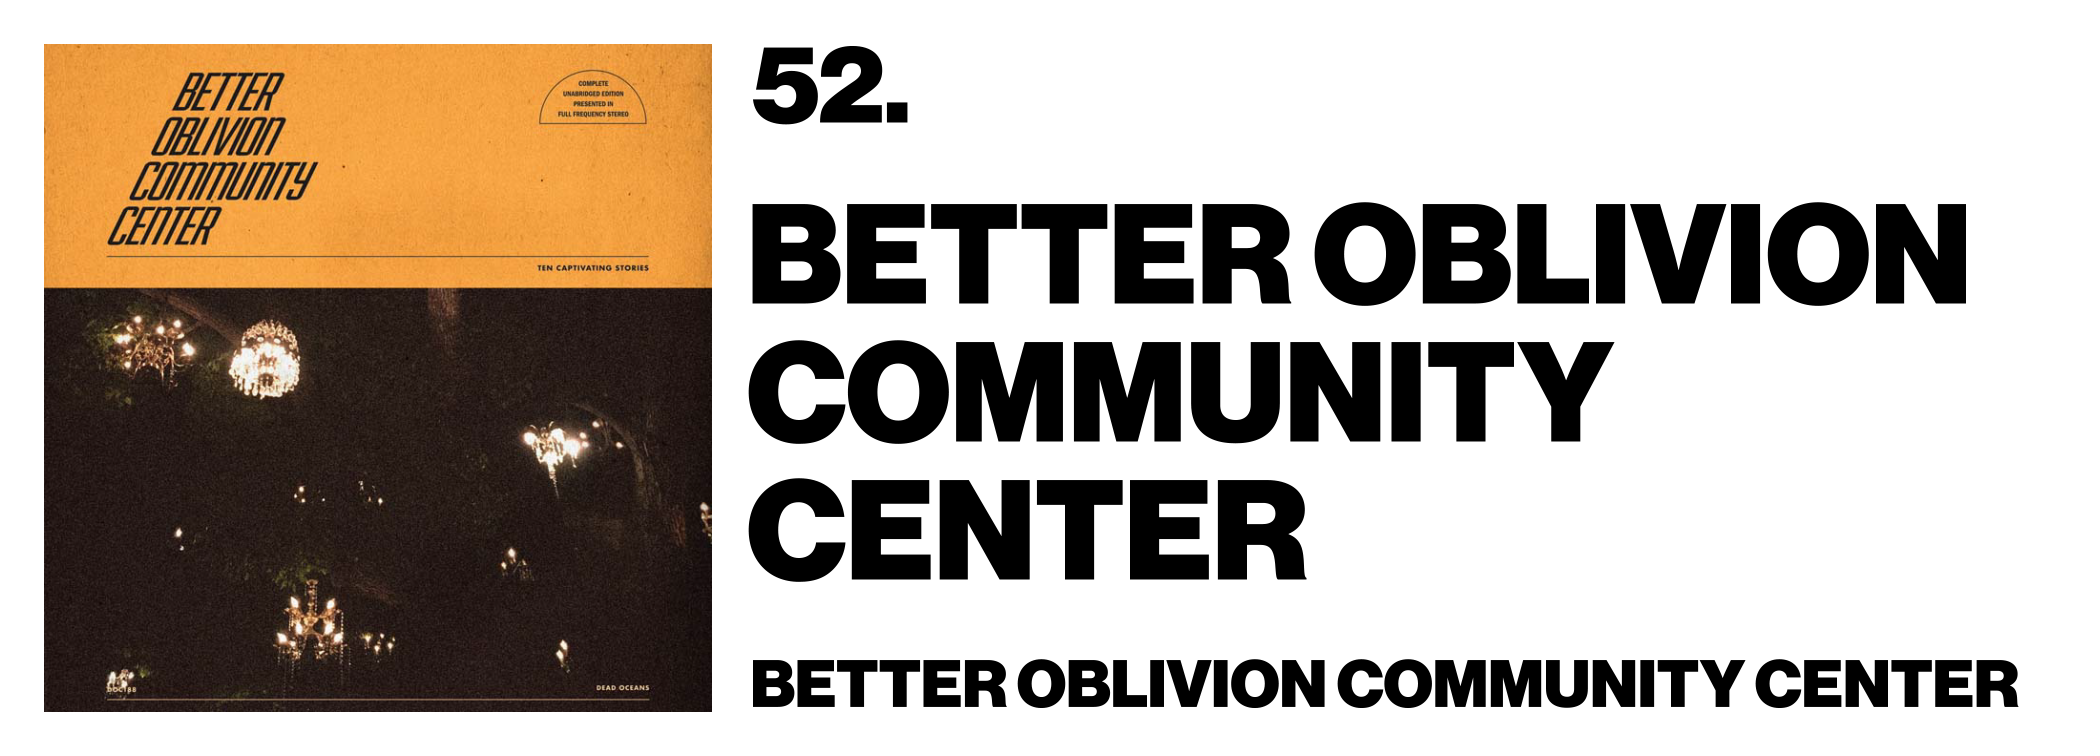 1575996517126-52-Better-Oblivion-Community-Center-Better-Oblivion-Community-Center